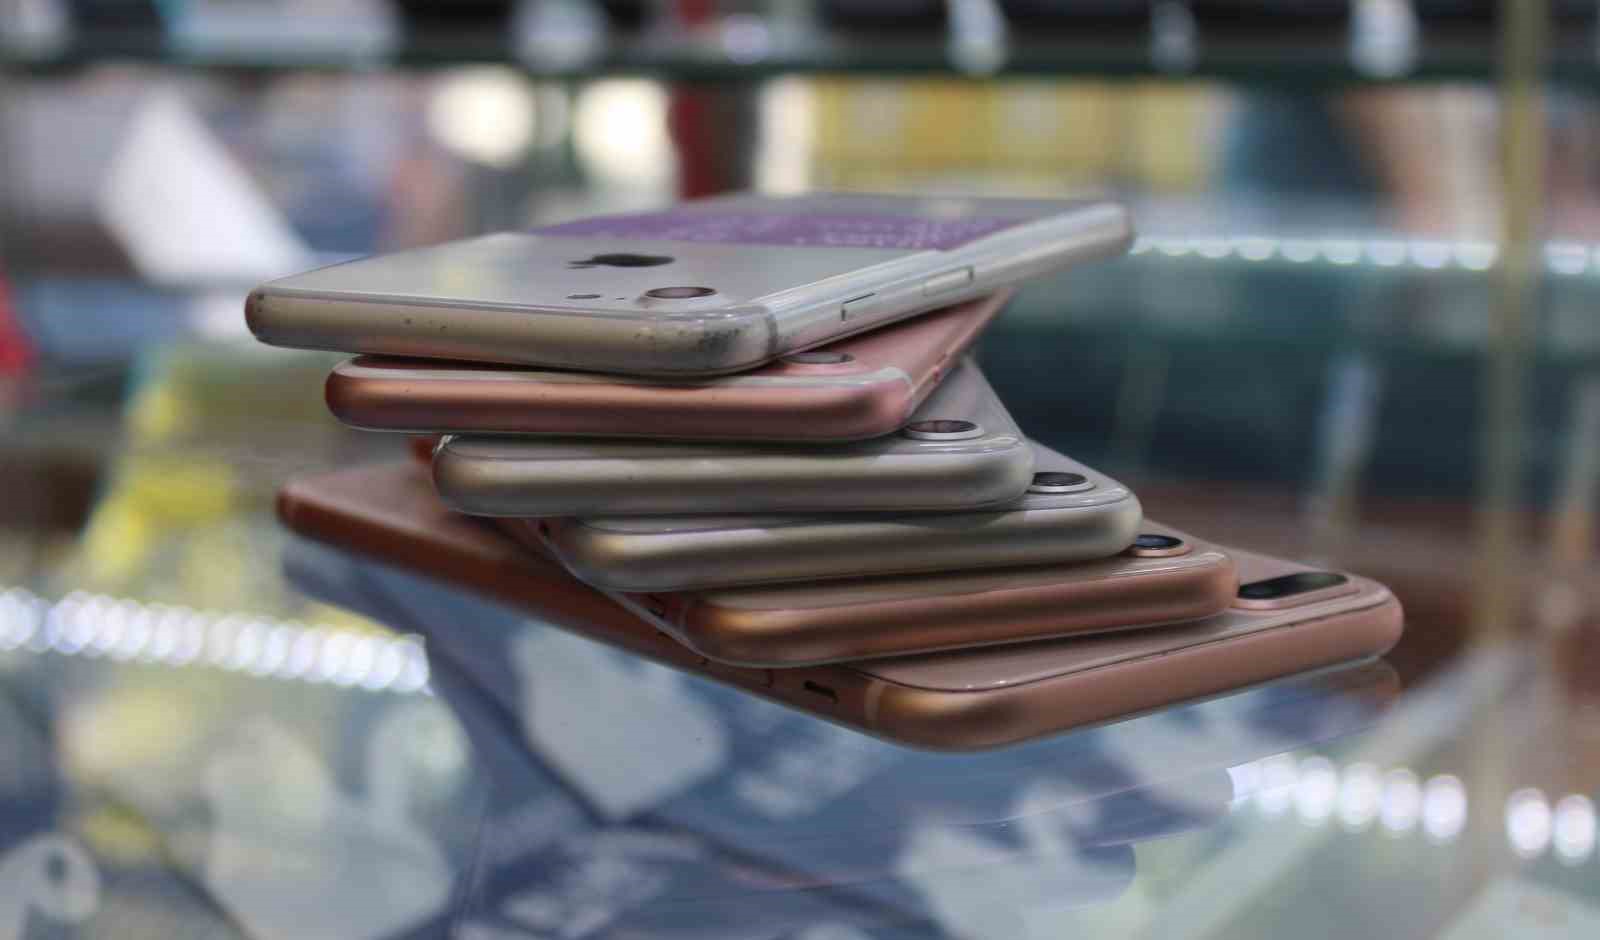 (ÖZEL) Cep telefon satıcılarından vatandaşlara İMEİ kayıt ücreti uyarısı